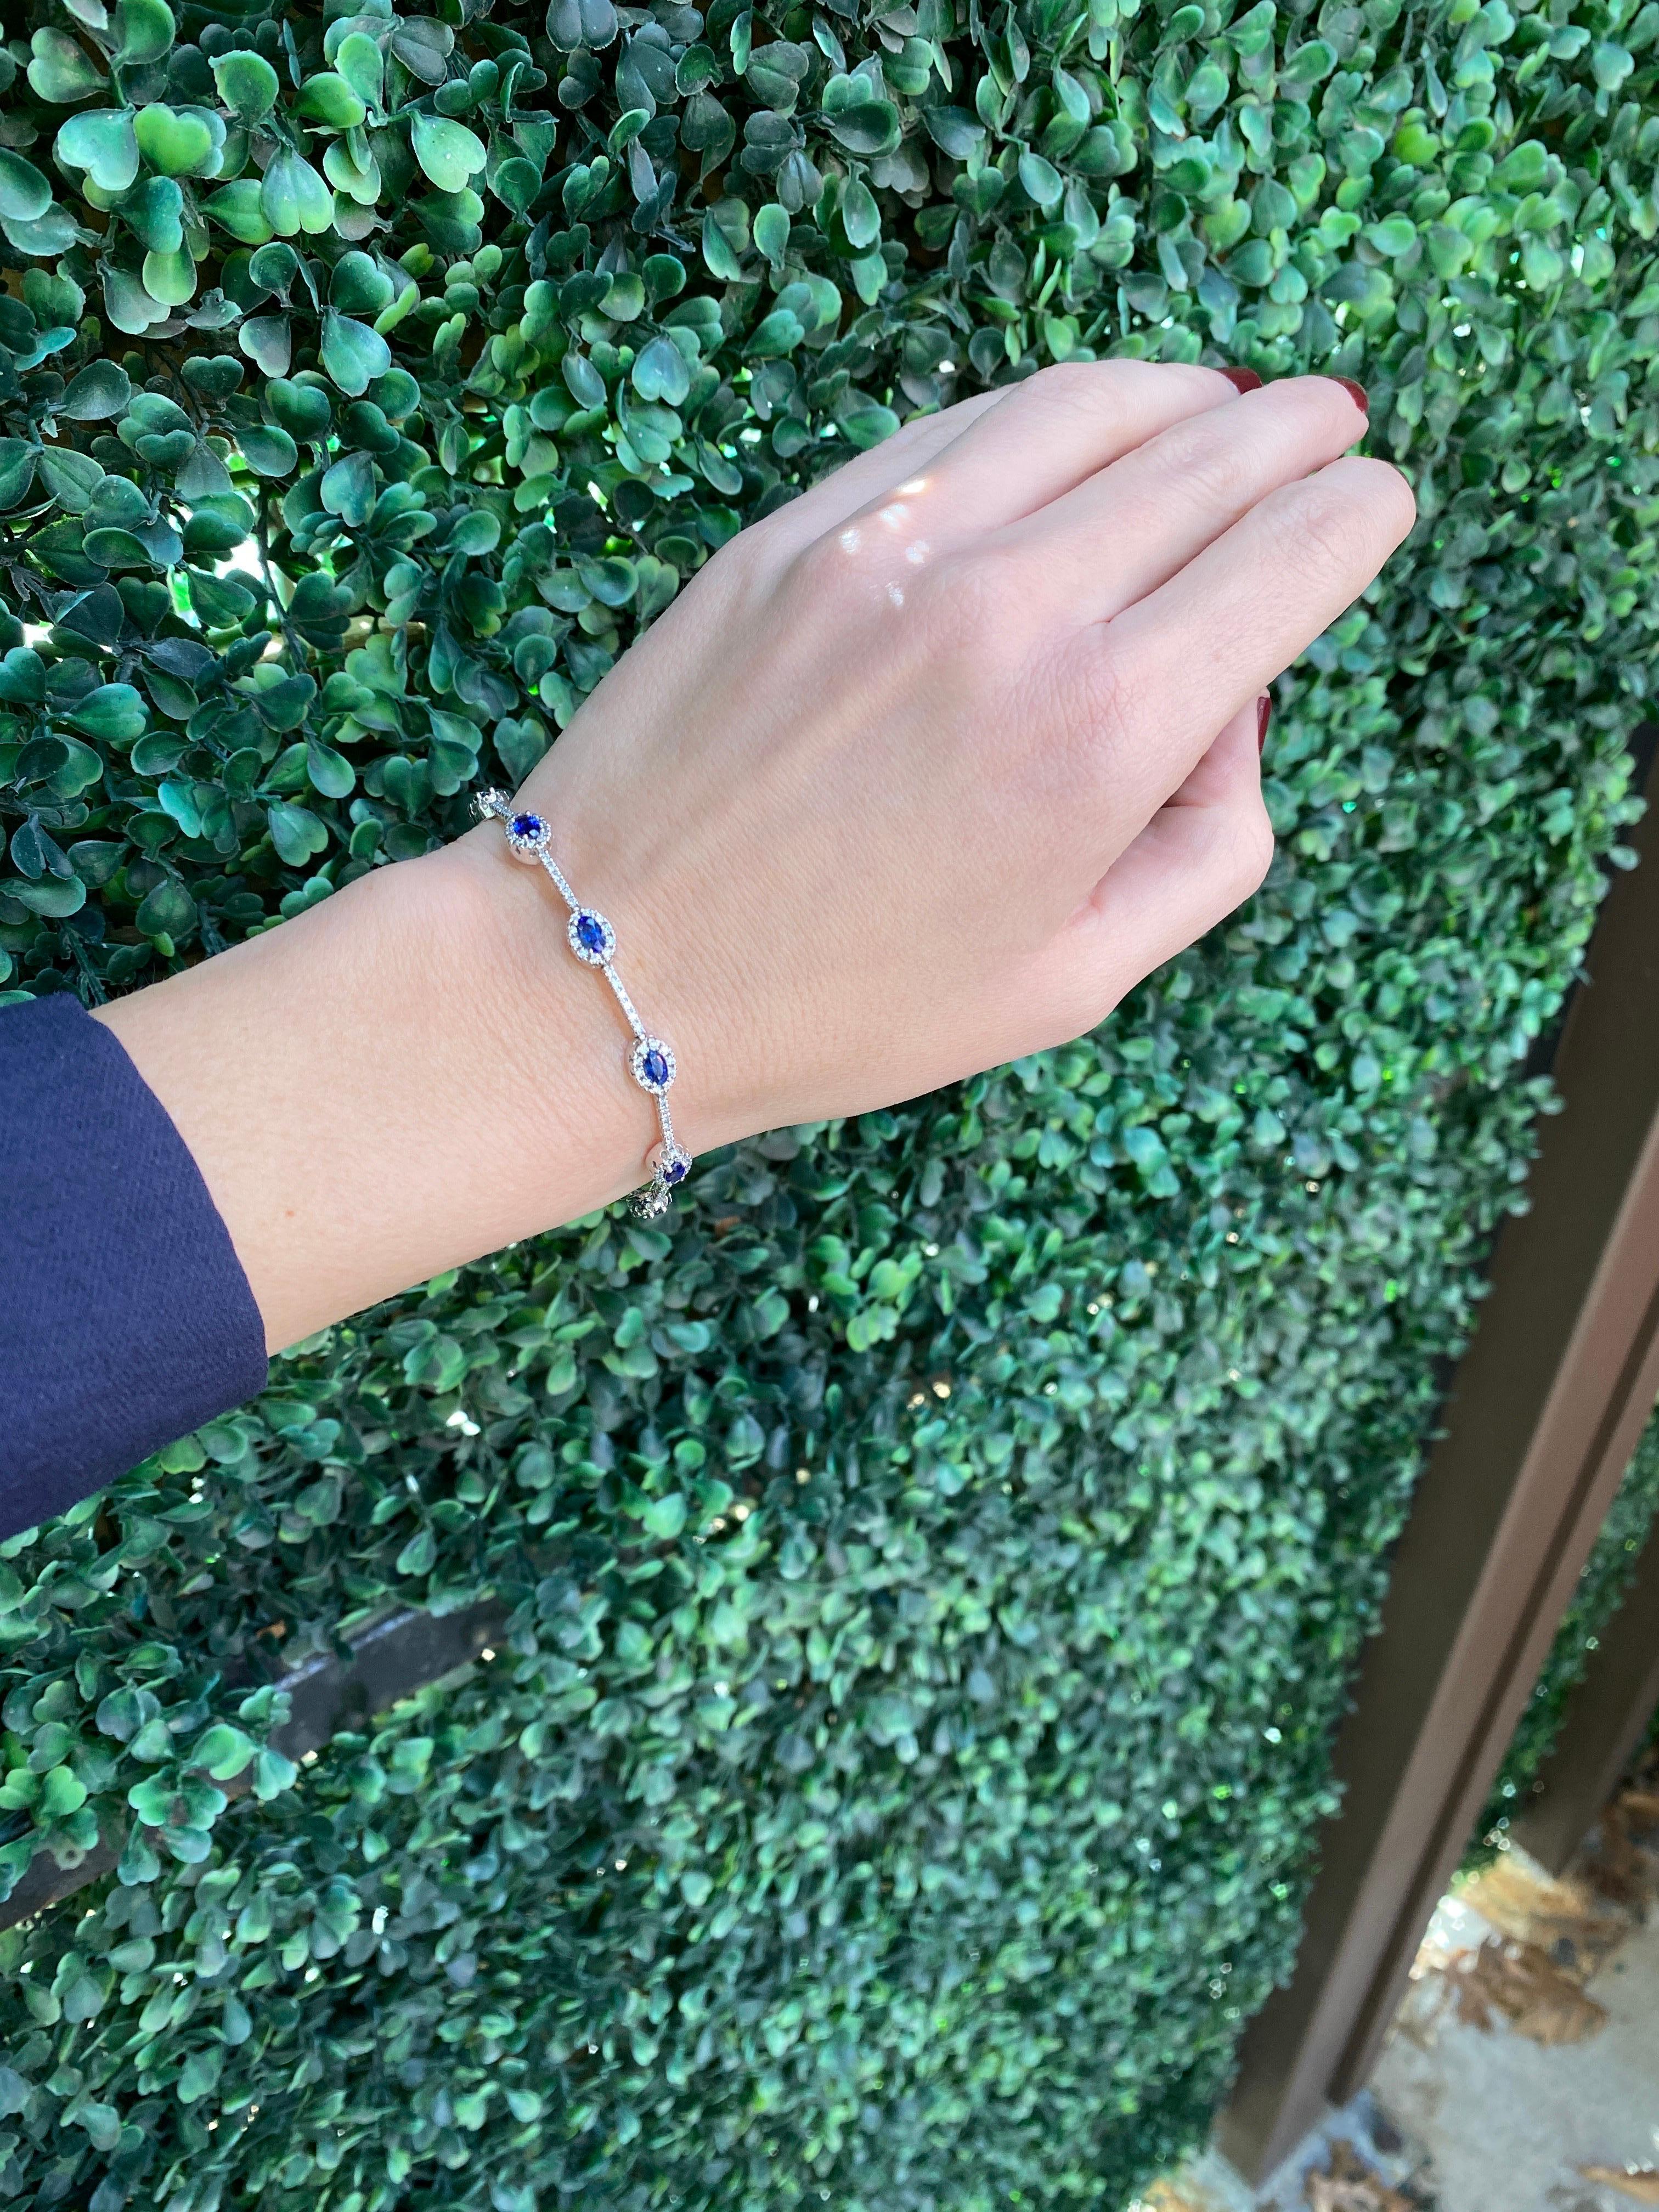 Dieses Armband besteht aus 2,15 Karat natürlichen blauen Saphiren im Ovalschliff, akzentuiert durch runde Diamanten von 2,15 Karat Gesamtgewicht, gefasst in 14 Karat Weißgold. 
Abmessungen: Länge ist 7